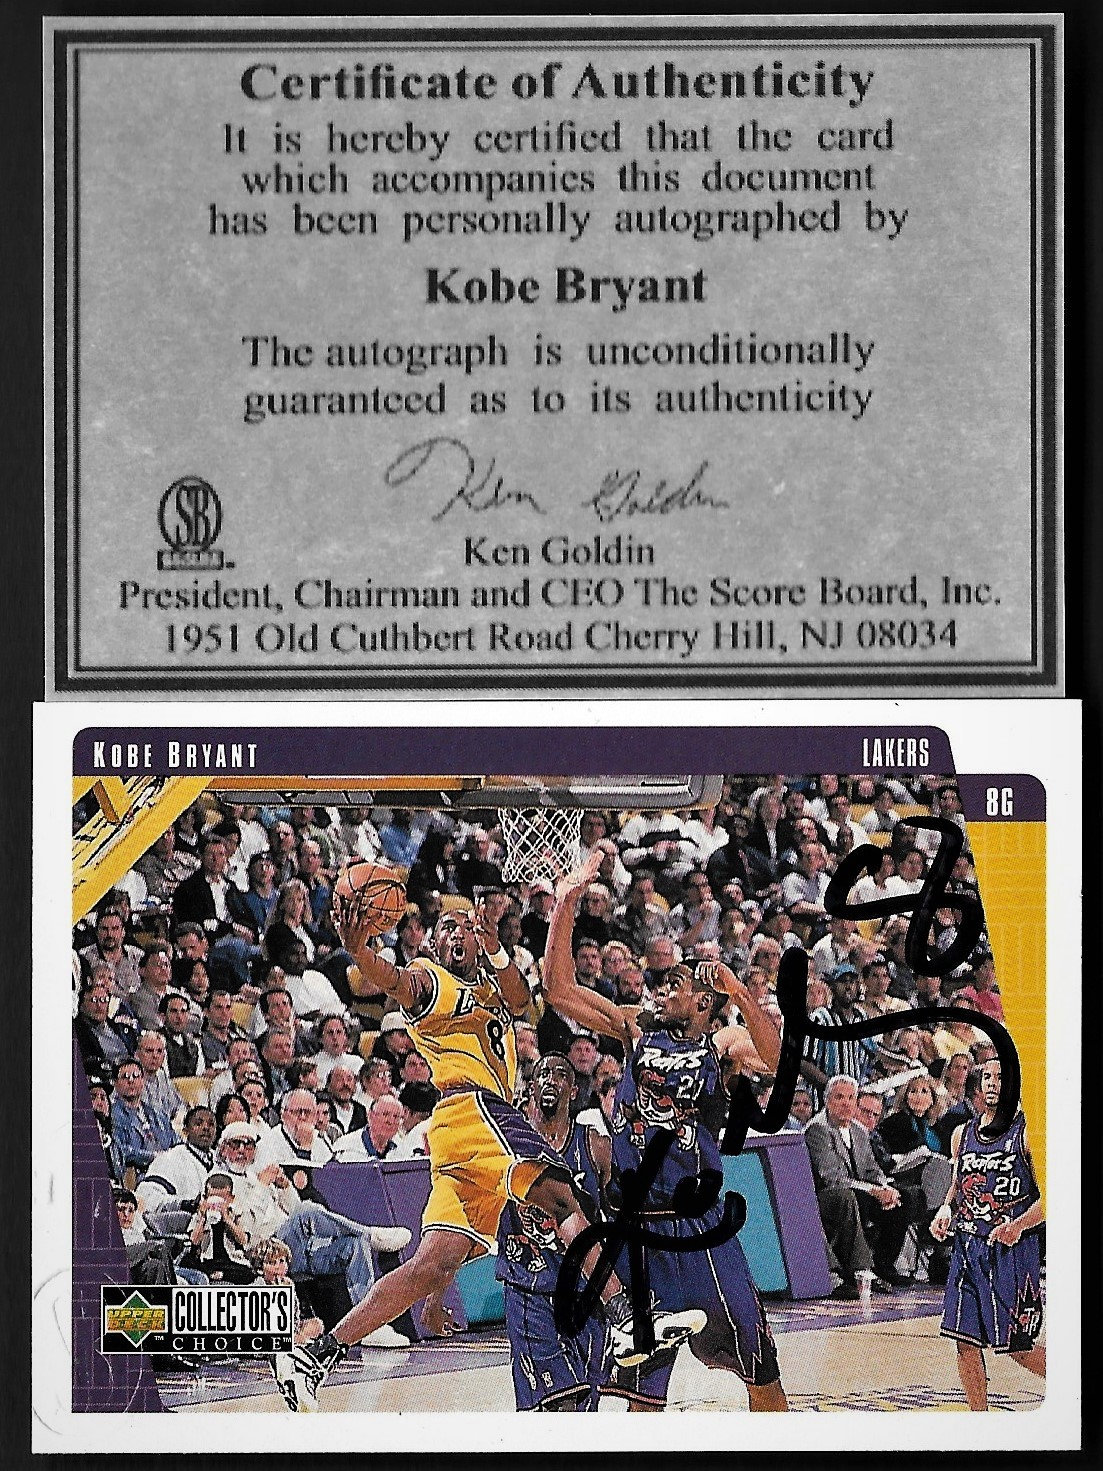 Kobe Bryant Signed Jersey - Full Name Signature. Basketball